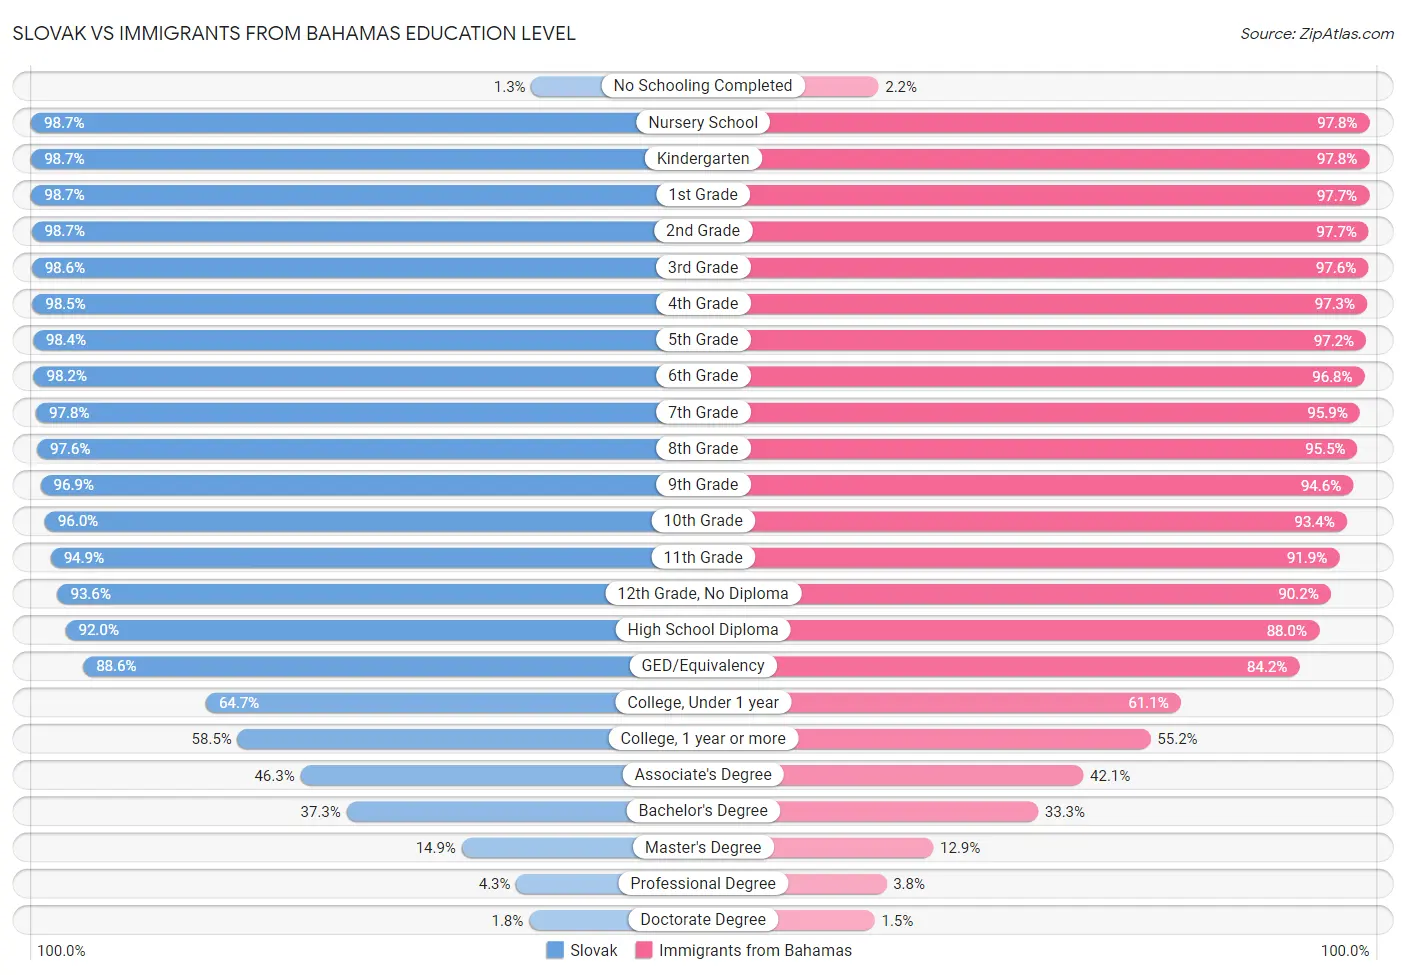 Slovak vs Immigrants from Bahamas Education Level